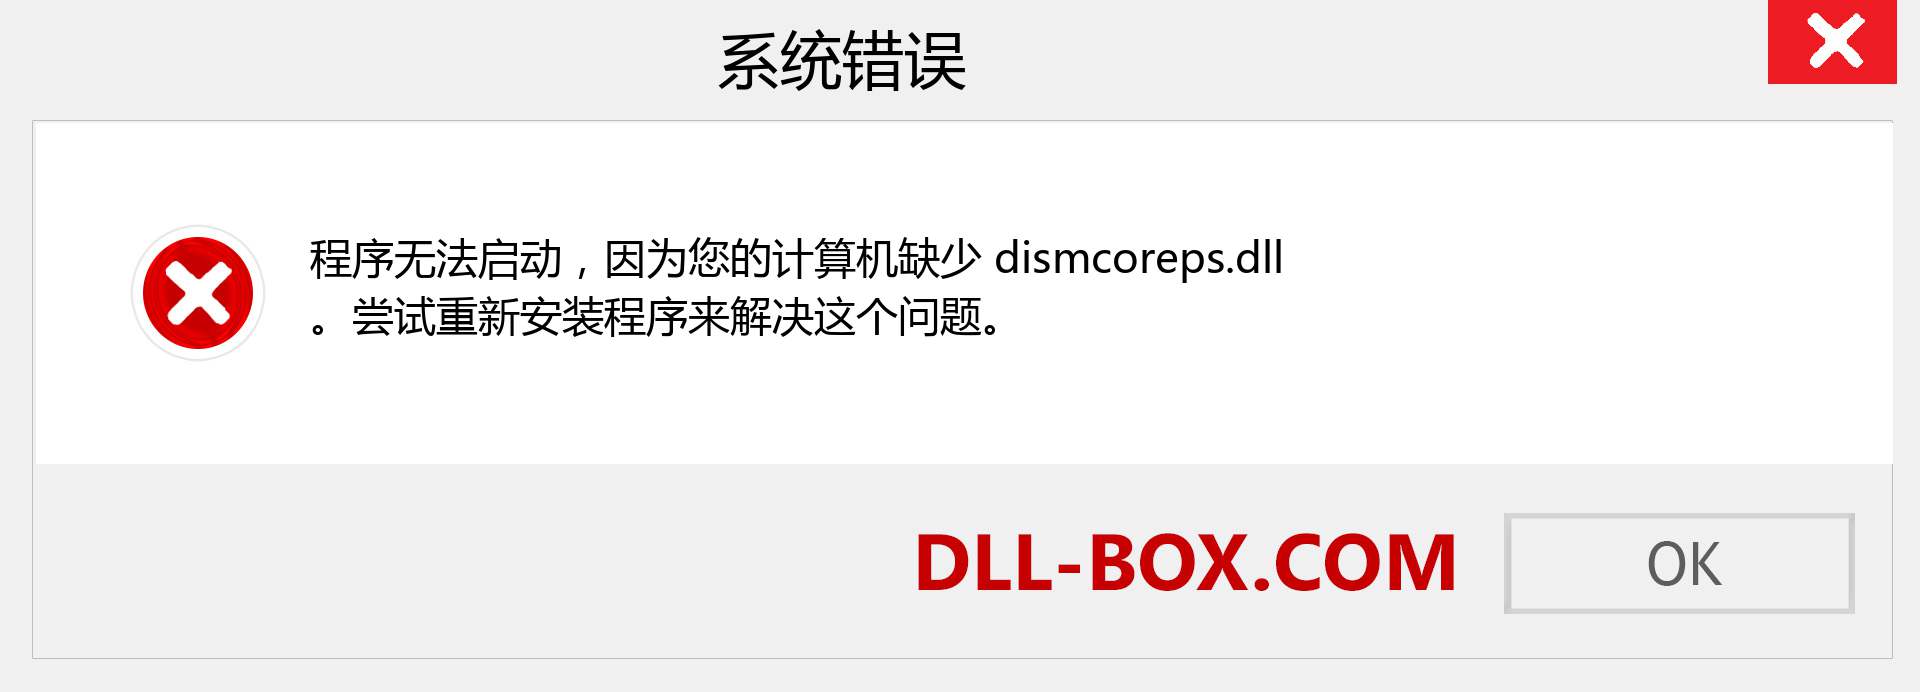 dismcoreps.dll 文件丢失？。 适用于 Windows 7、8、10 的下载 - 修复 Windows、照片、图像上的 dismcoreps dll 丢失错误